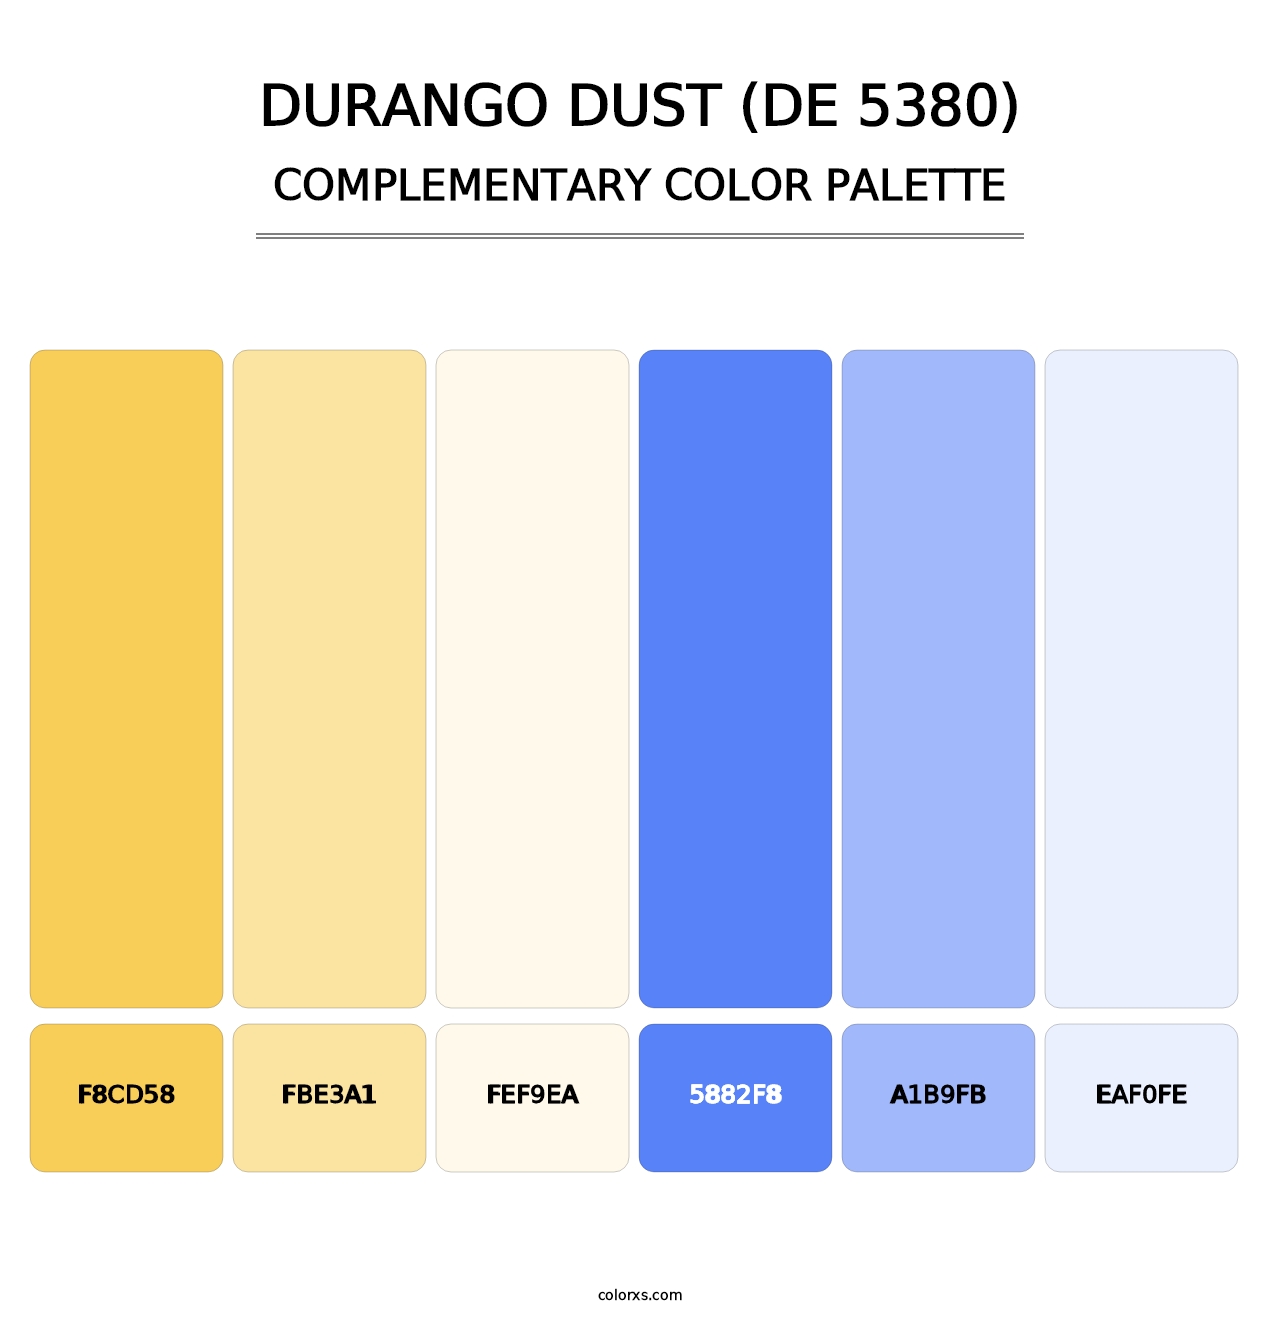 Durango Dust (DE 5380) - Complementary Color Palette